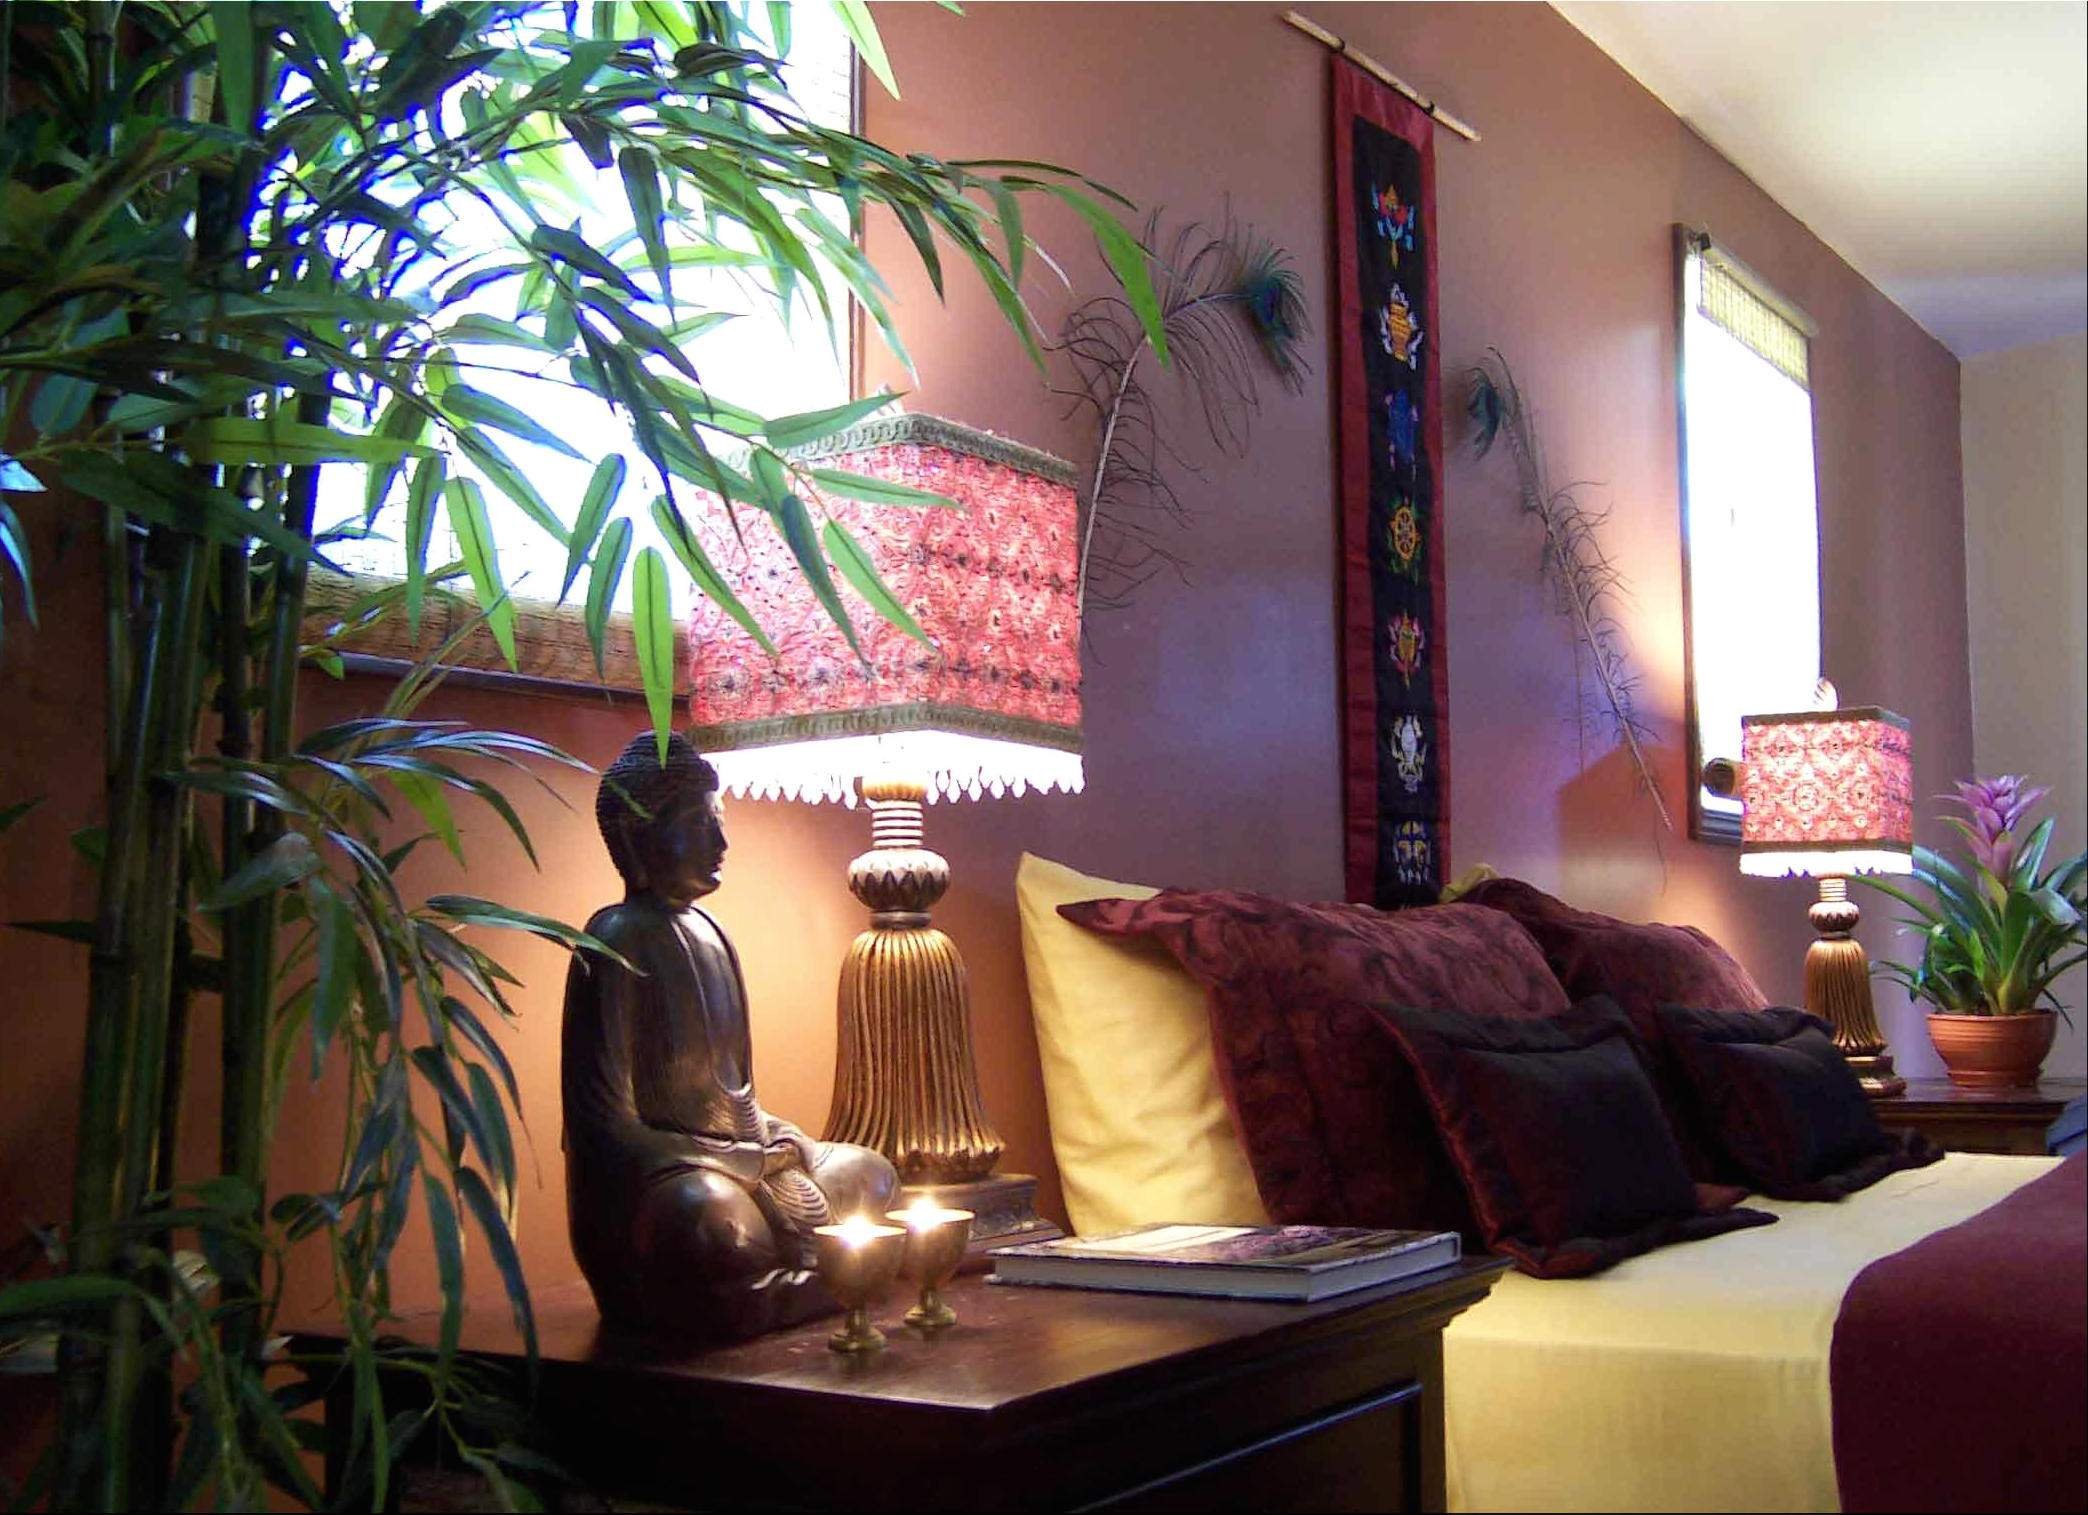 Фанфеншуй ру. Комната в буддийском стиле. Эзотерический стиль в интерьере. Фэн-шуй. Тайский стиль в интерьере.